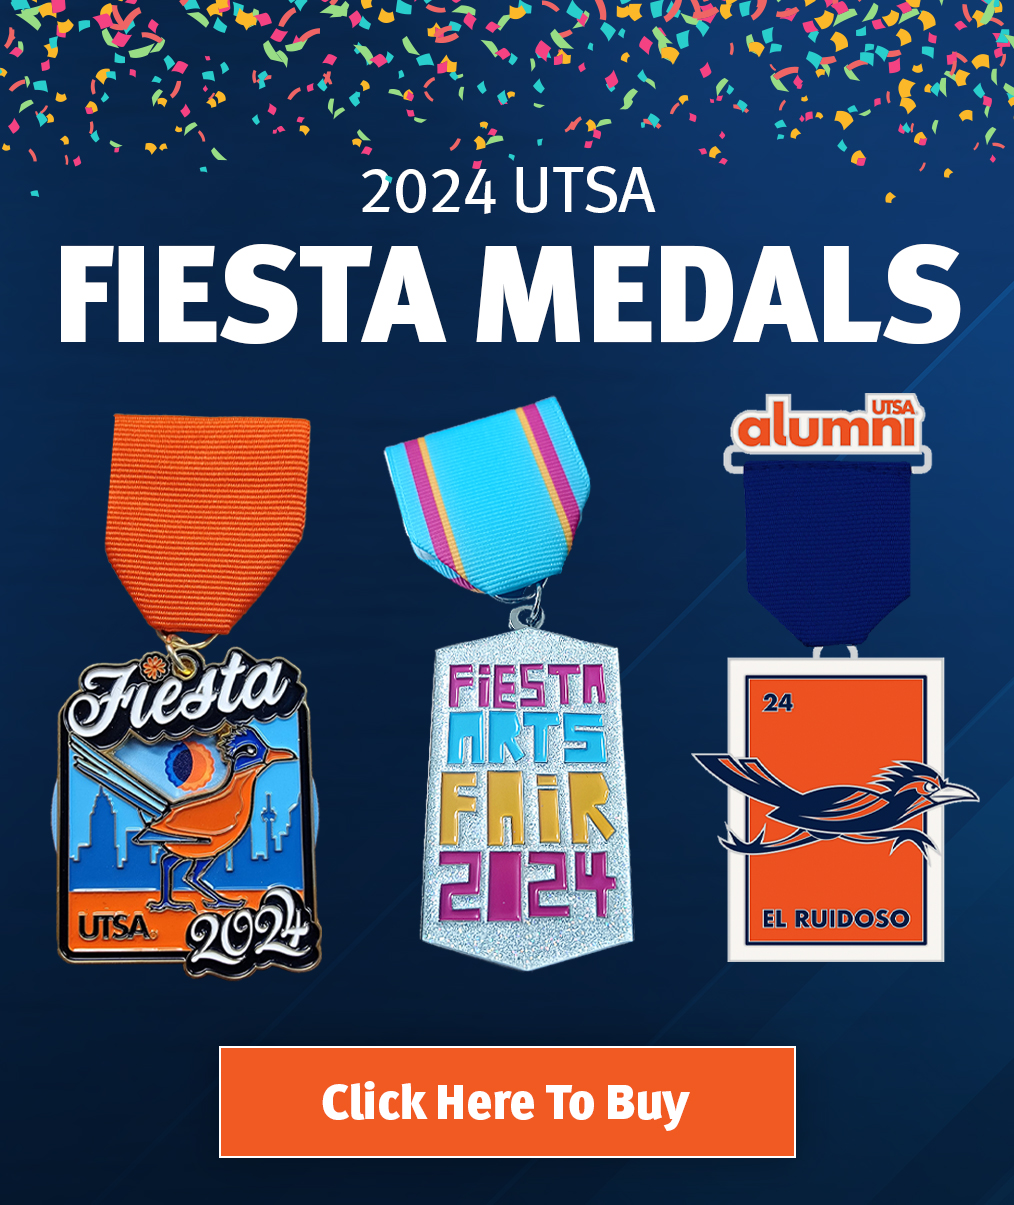 2024 UTSA Fiesta Medals are now on Sale at utsa.edu/fiesta/medals